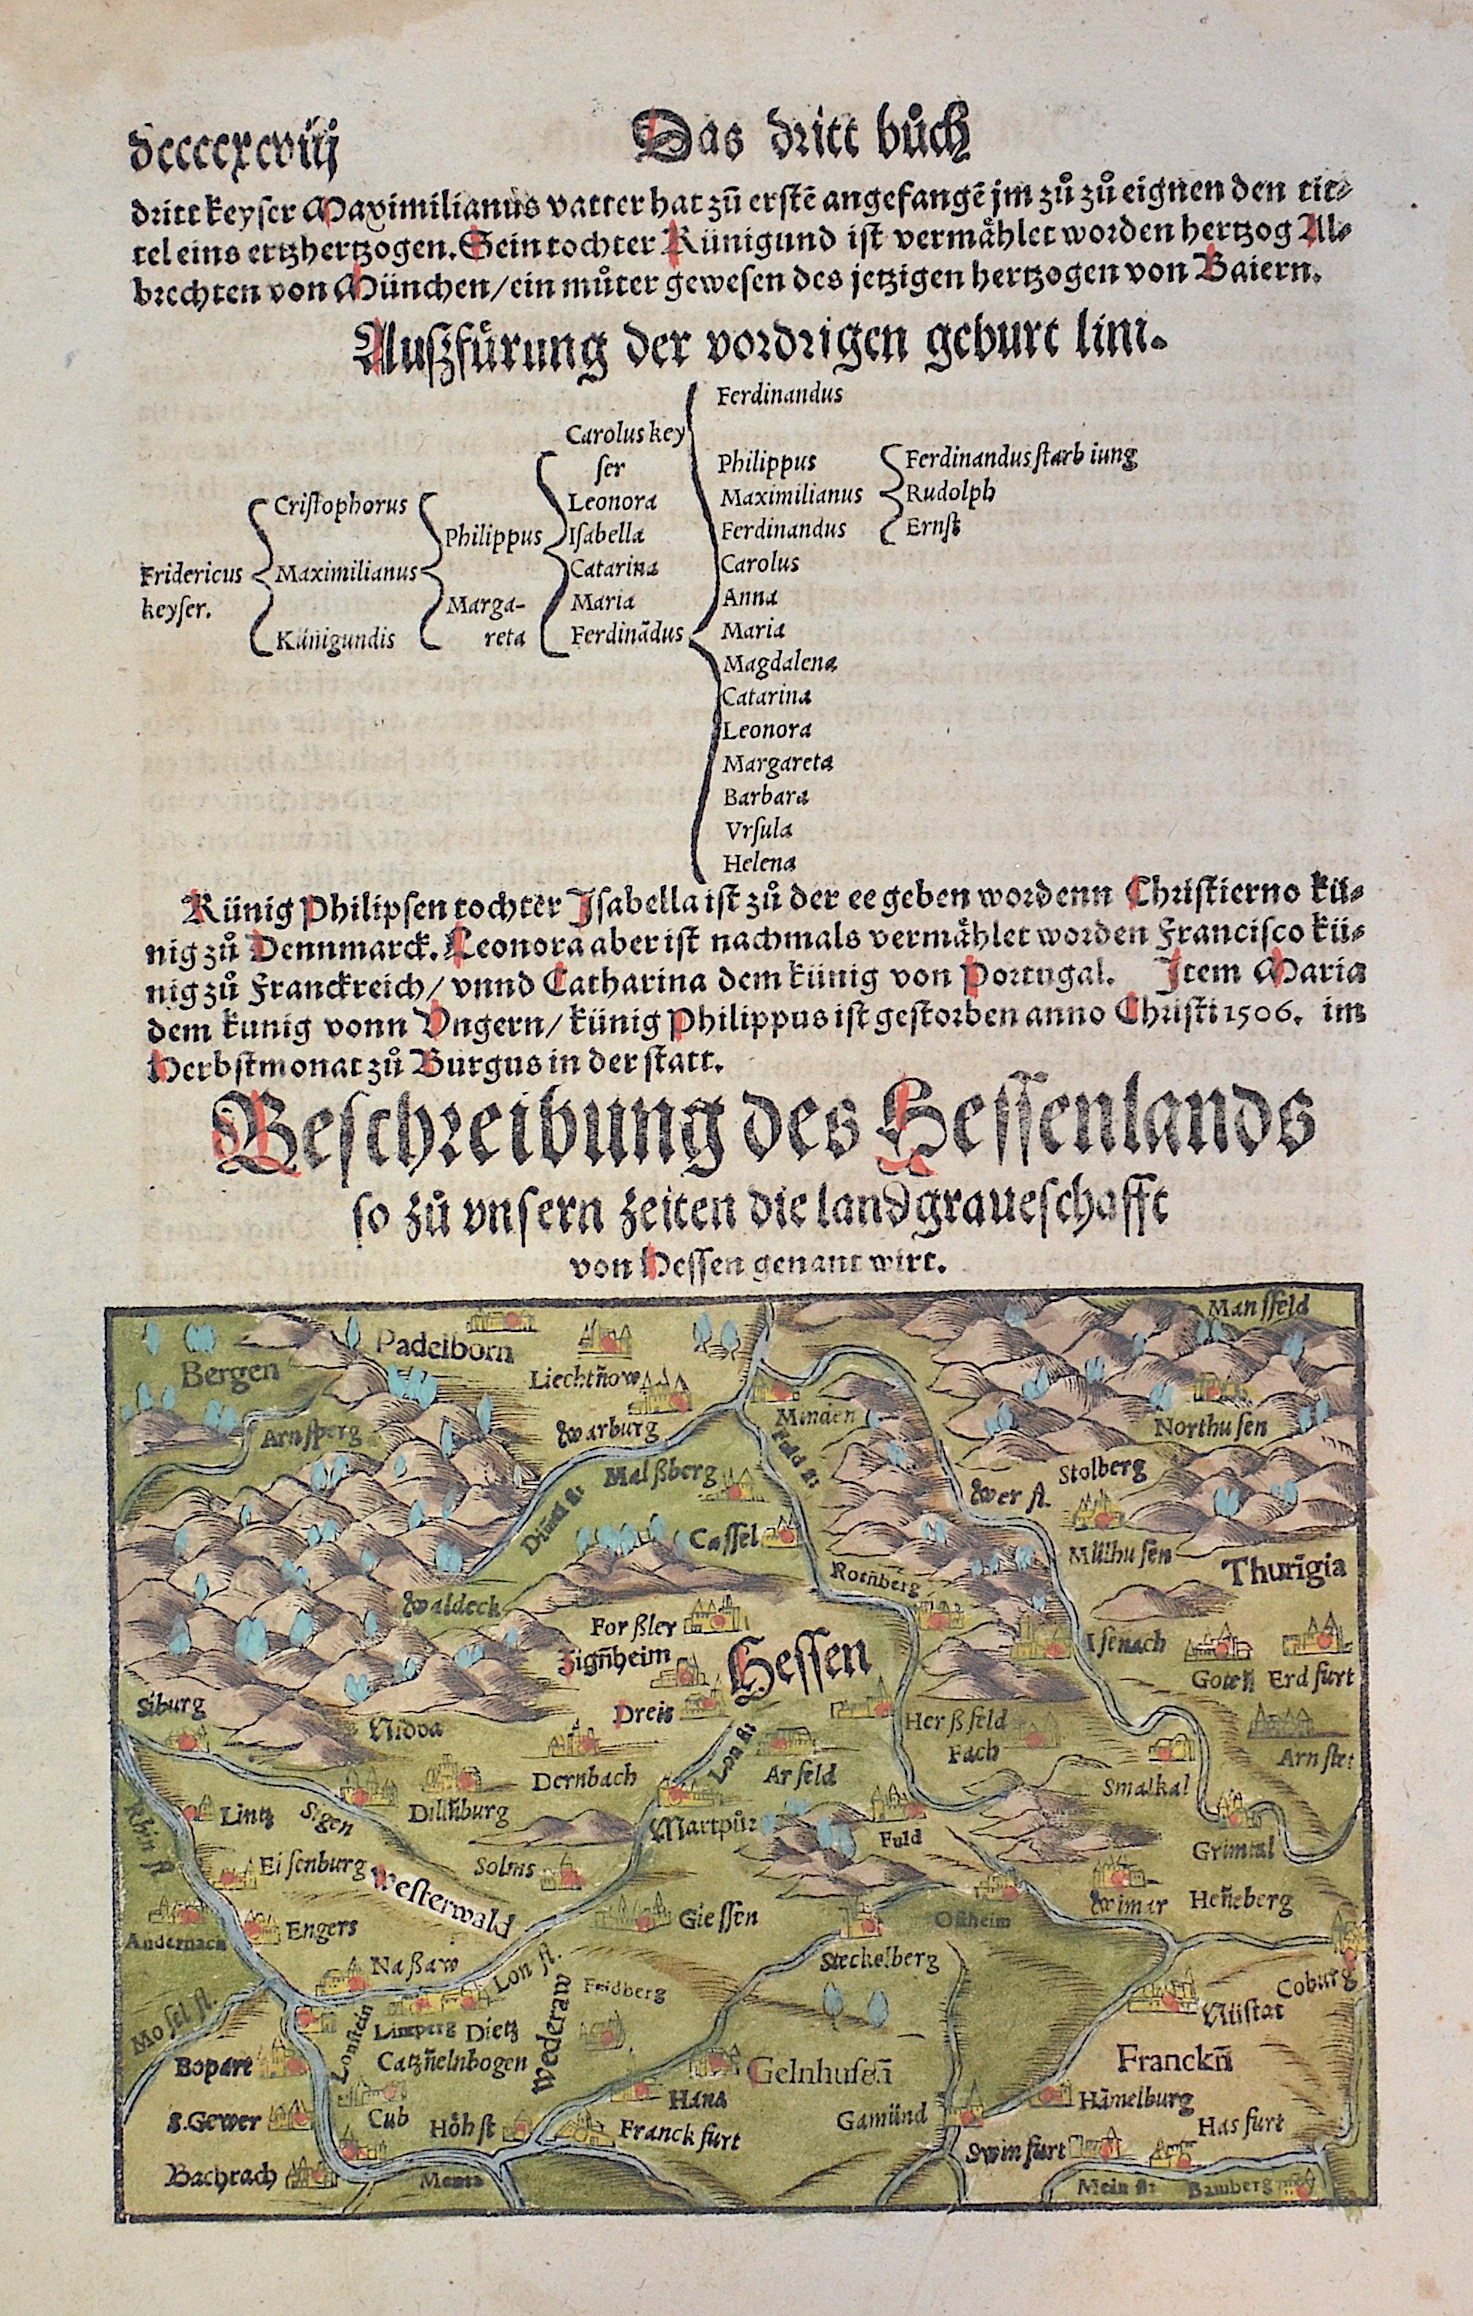 Münster Sebastian Bescheibung des Hessenlands so zu unsern Zeiten die Landgraueschafft von Hessen genant wirt.